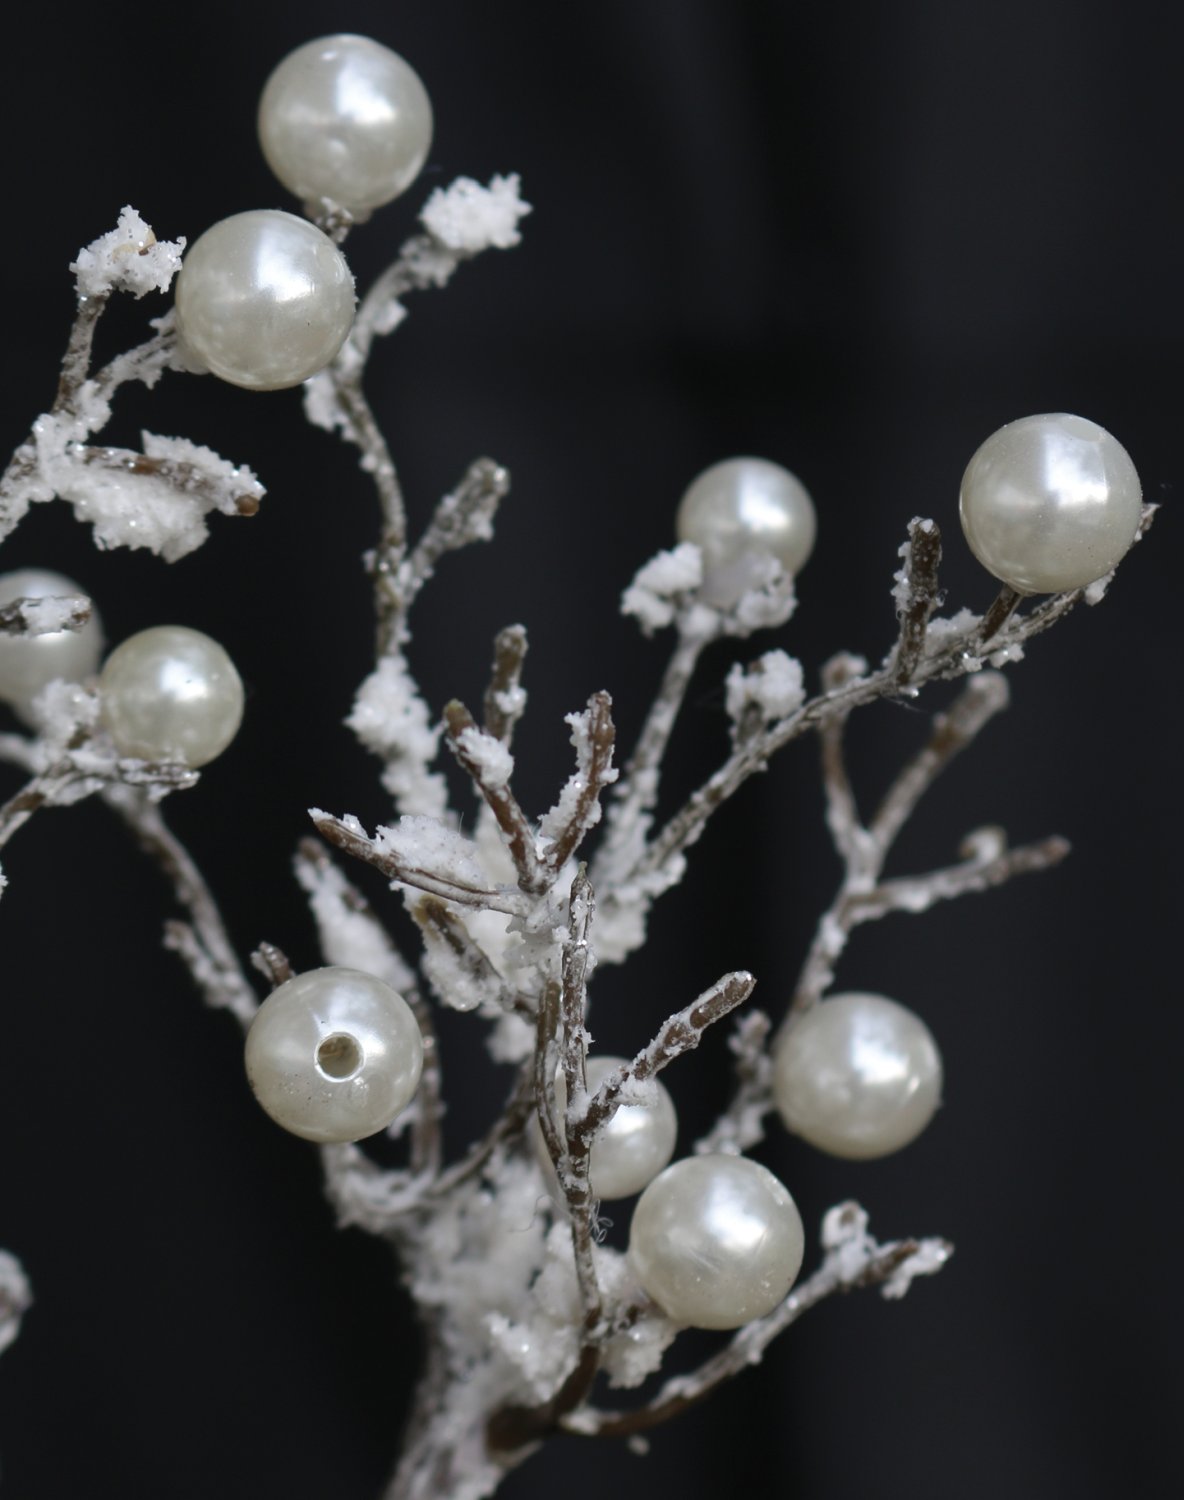 Künstlicher Dekozweig mit Perlen und Schnee, 30 cm, frost-braun